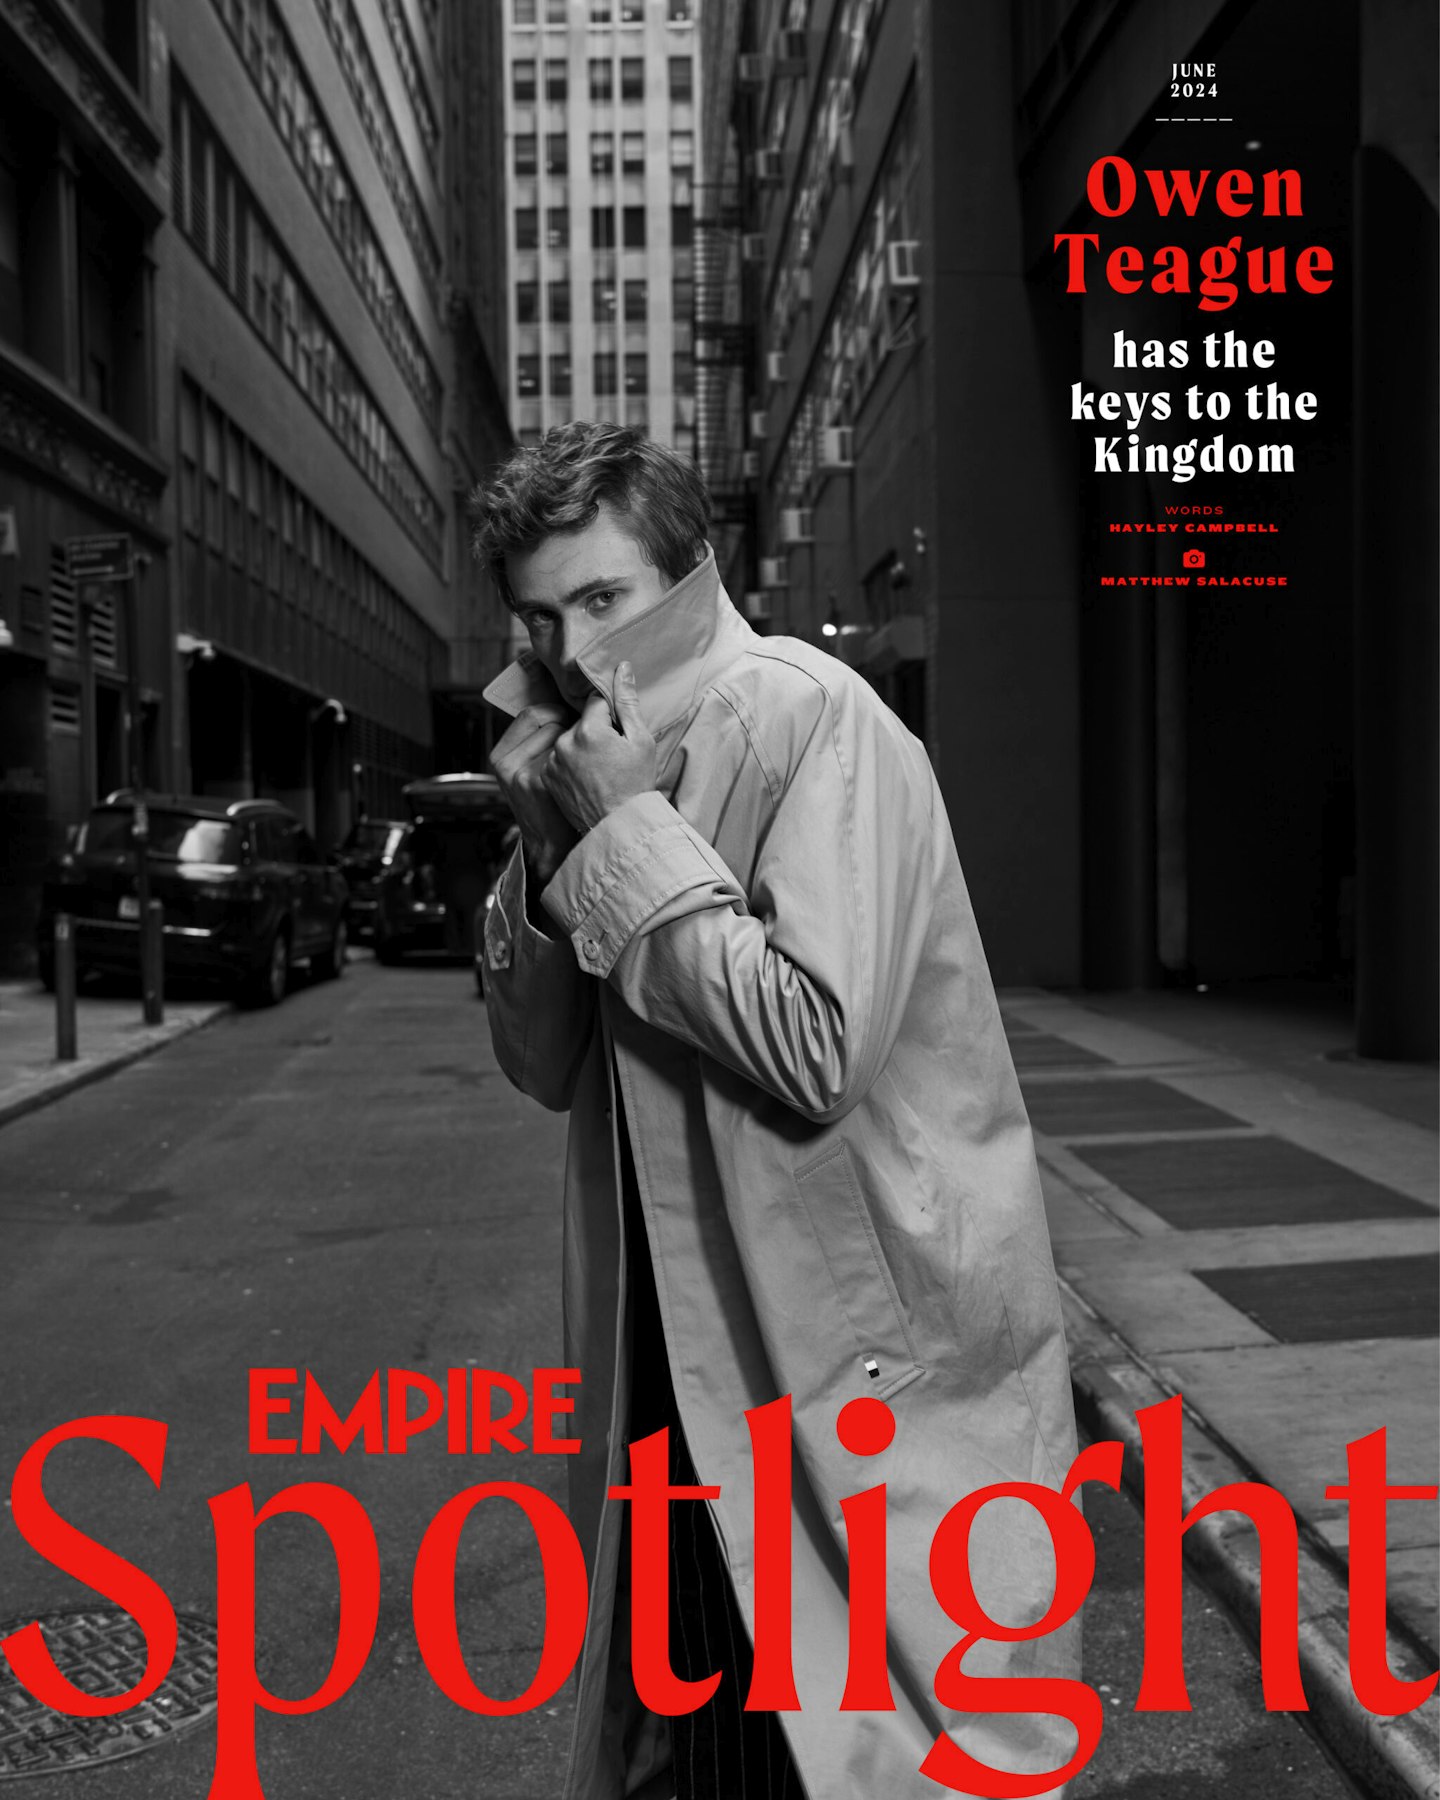 Empire Spotlight – Owen Teague